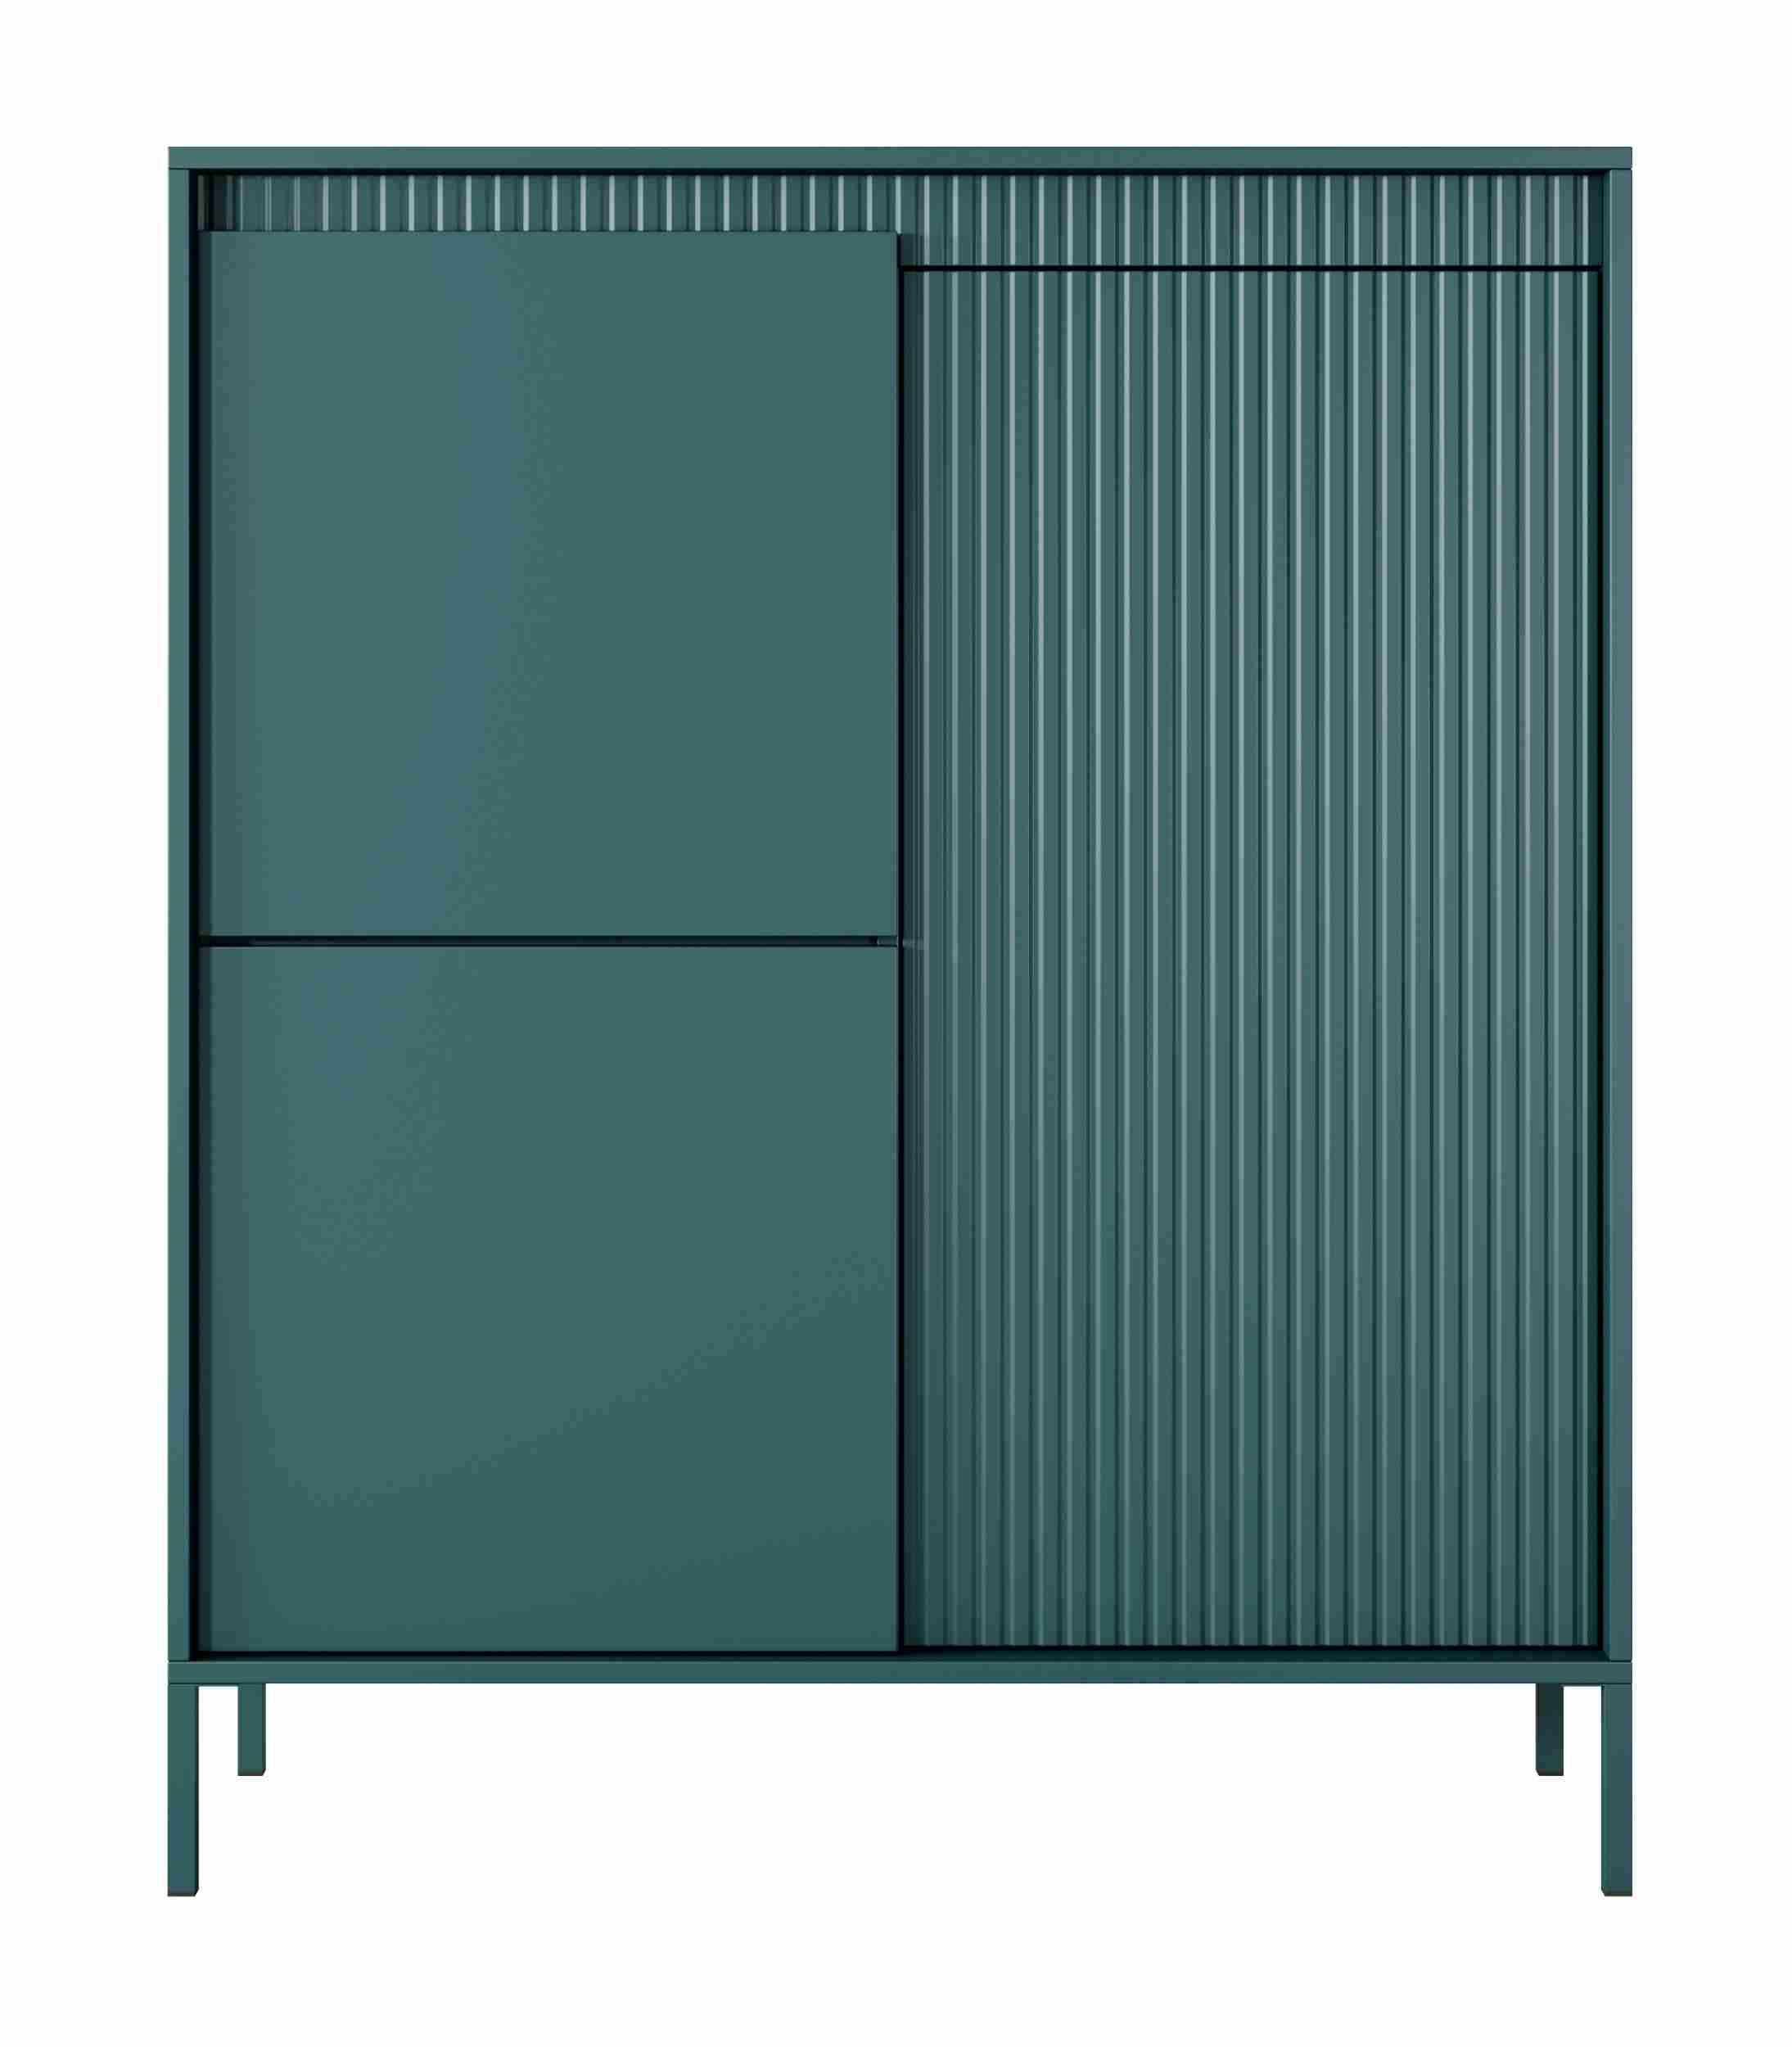 Furnix Highboard Rebeca Sideboard Kommode mit Türen und Metallbeinen 4 Farben Auswahl, dekorative Lamellen, Design & Funktionalität, 103,5x123,4x39,5 cm